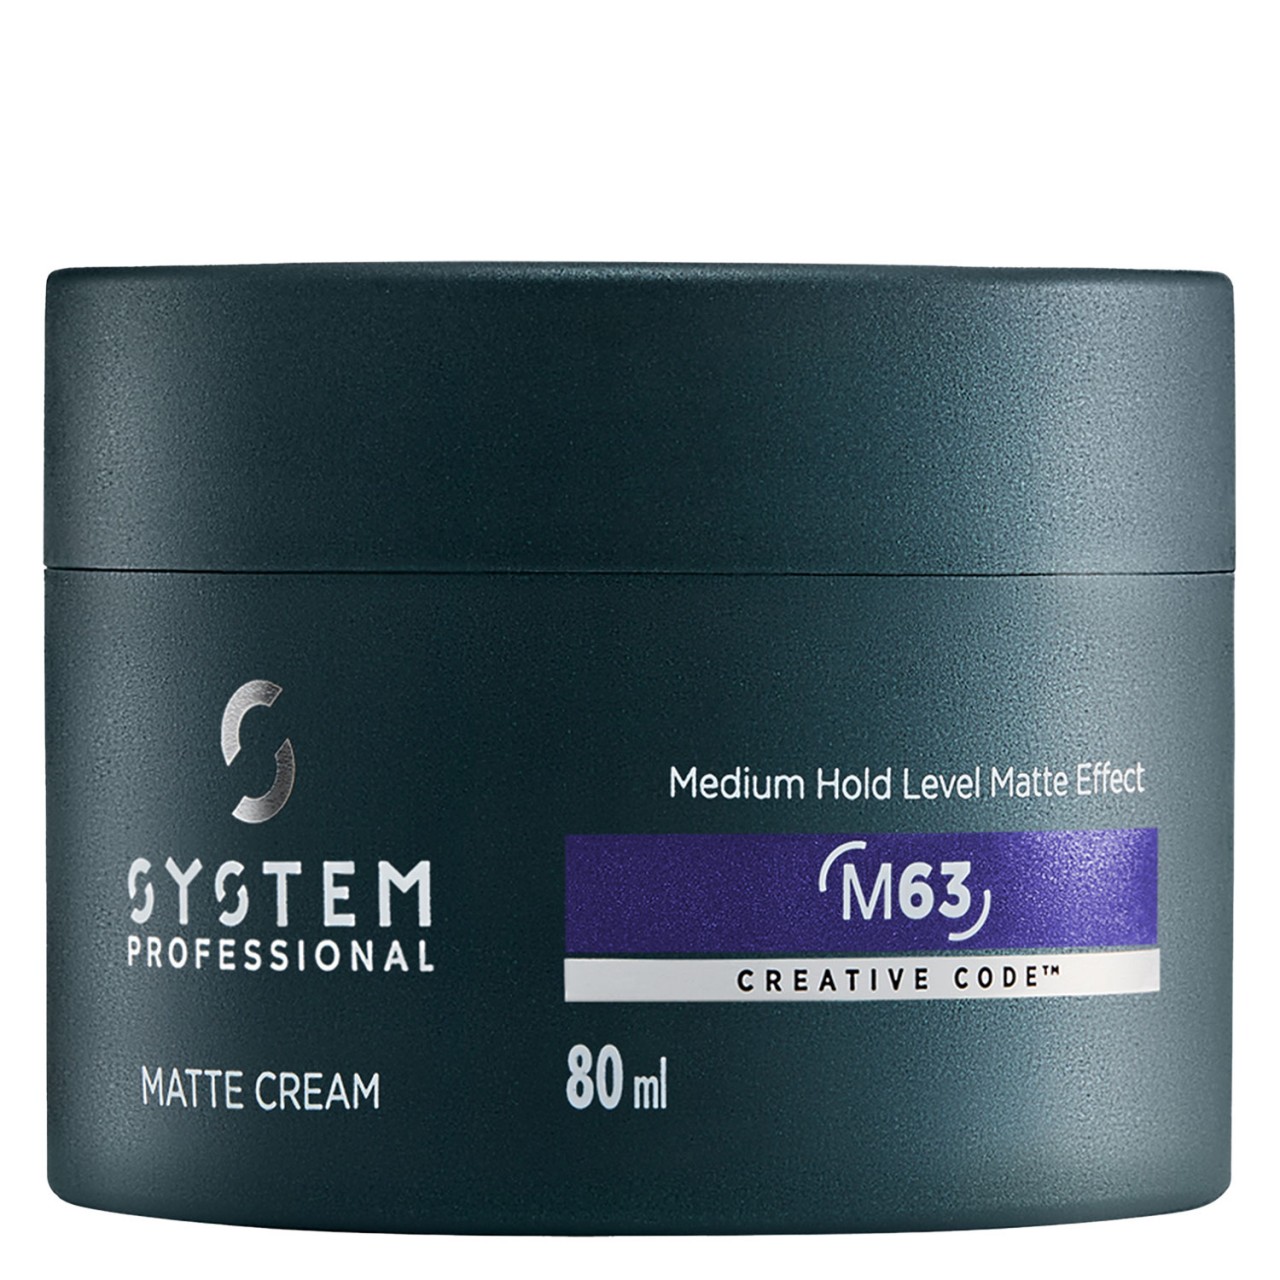 System Professional Man - Matte Cream von System Professional